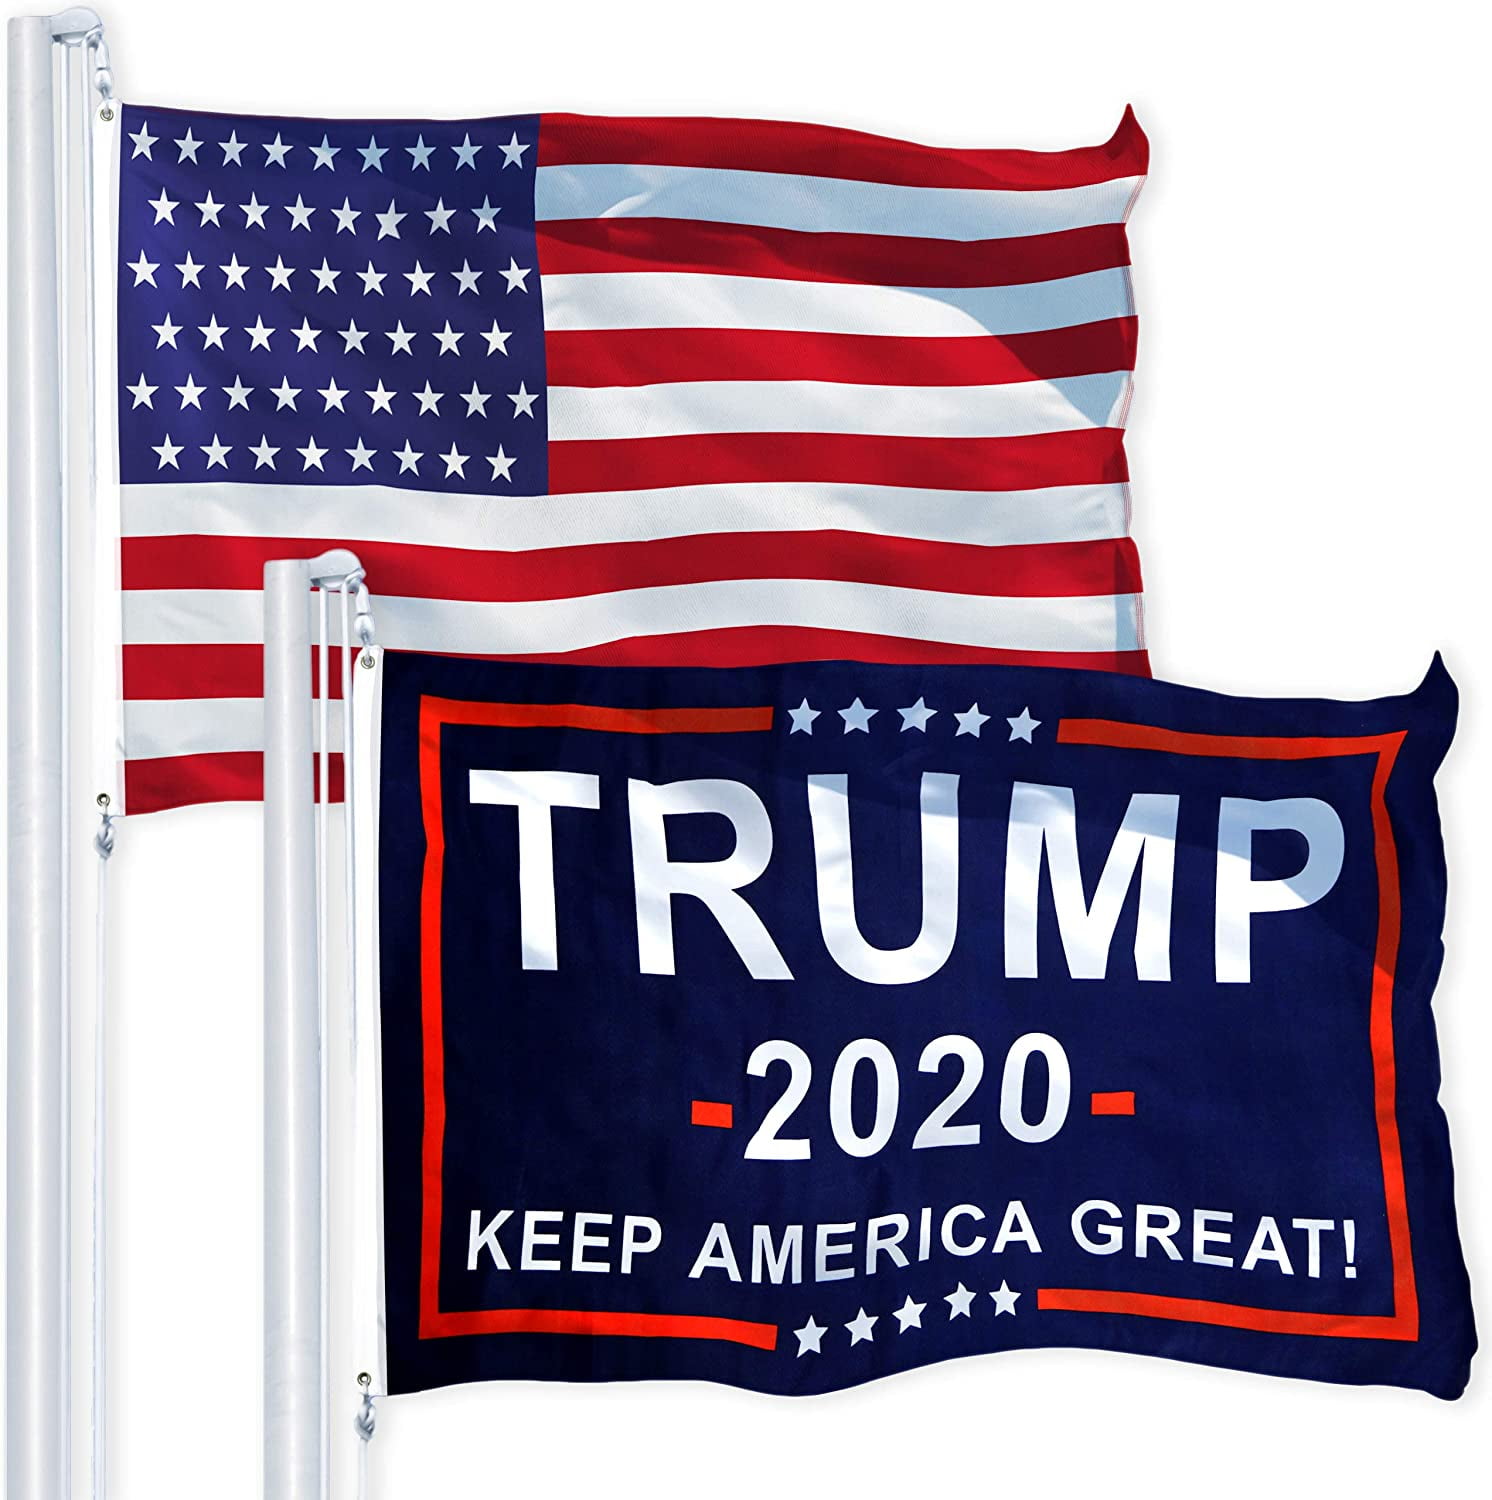 TRUMP 2020 KEEP AMERICA FIRST 3X5 ORIGINAL BANNER RARE FLAG USA DJT 1776 U.S.A 